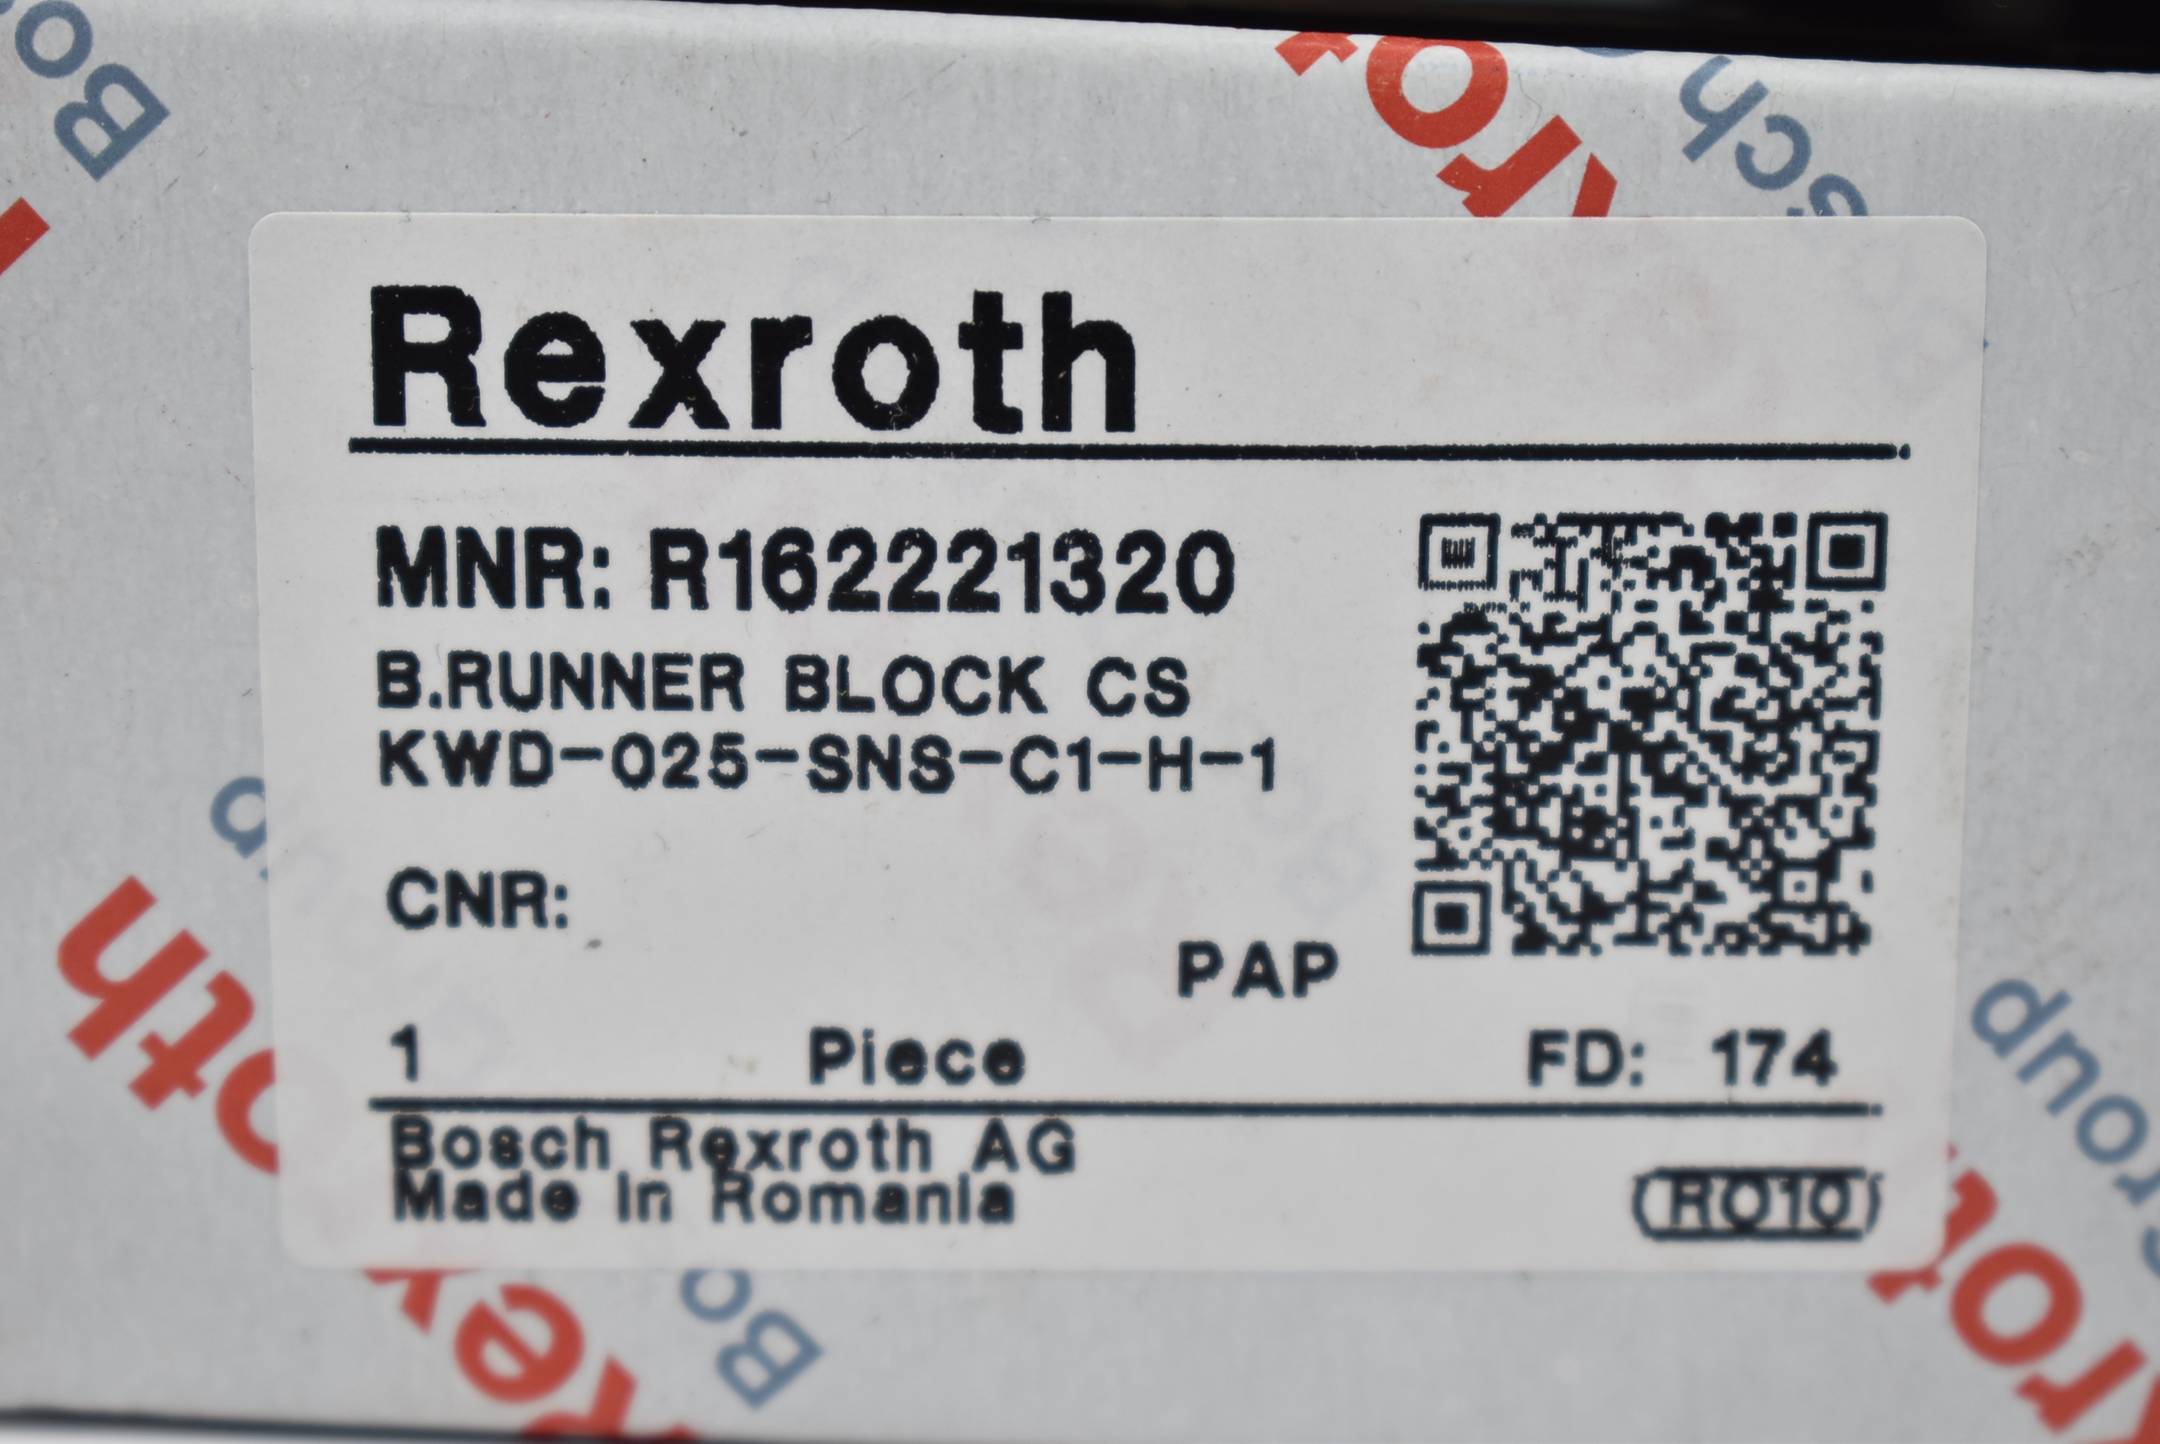 Rexroth Führungswagen KWD-025-SNS-C1-H-1 ( R162221320 )